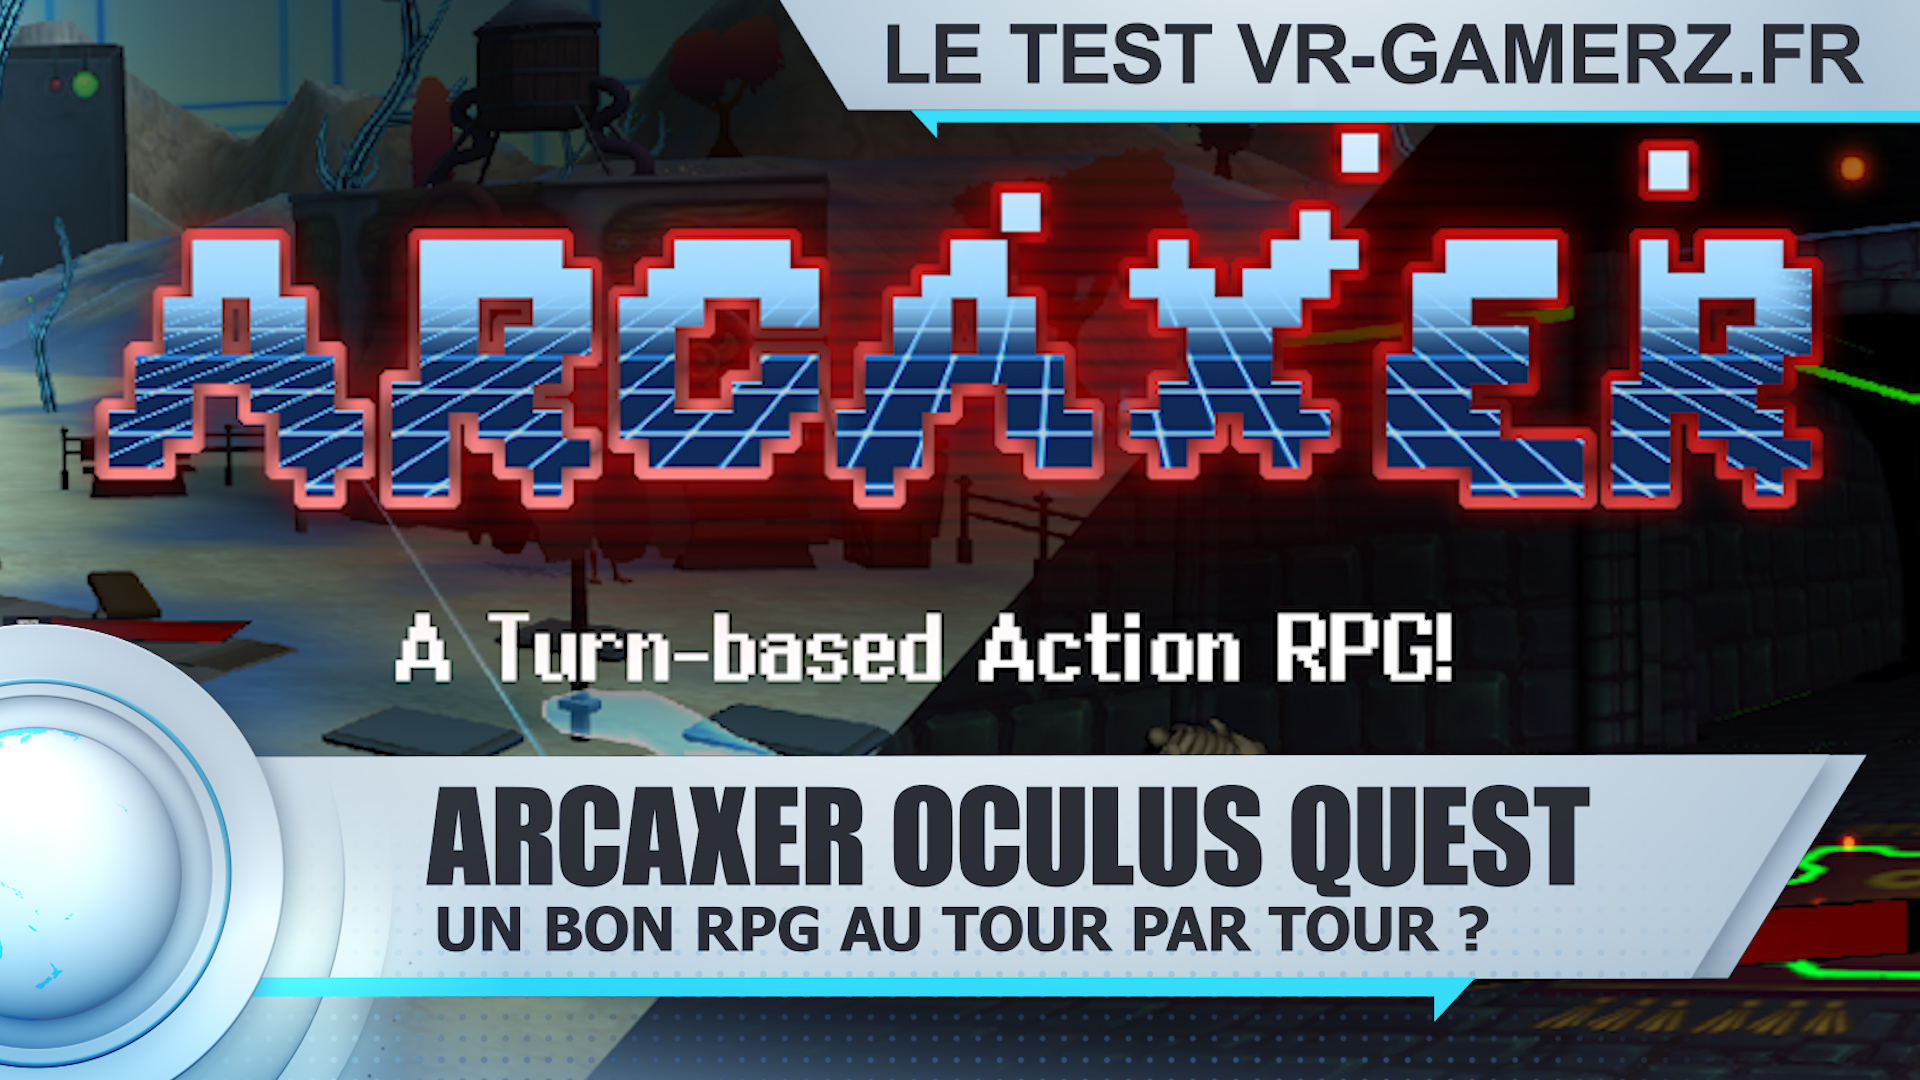 Test Arcaxer Oculus quest : Un bon RPG au tour par tour ?